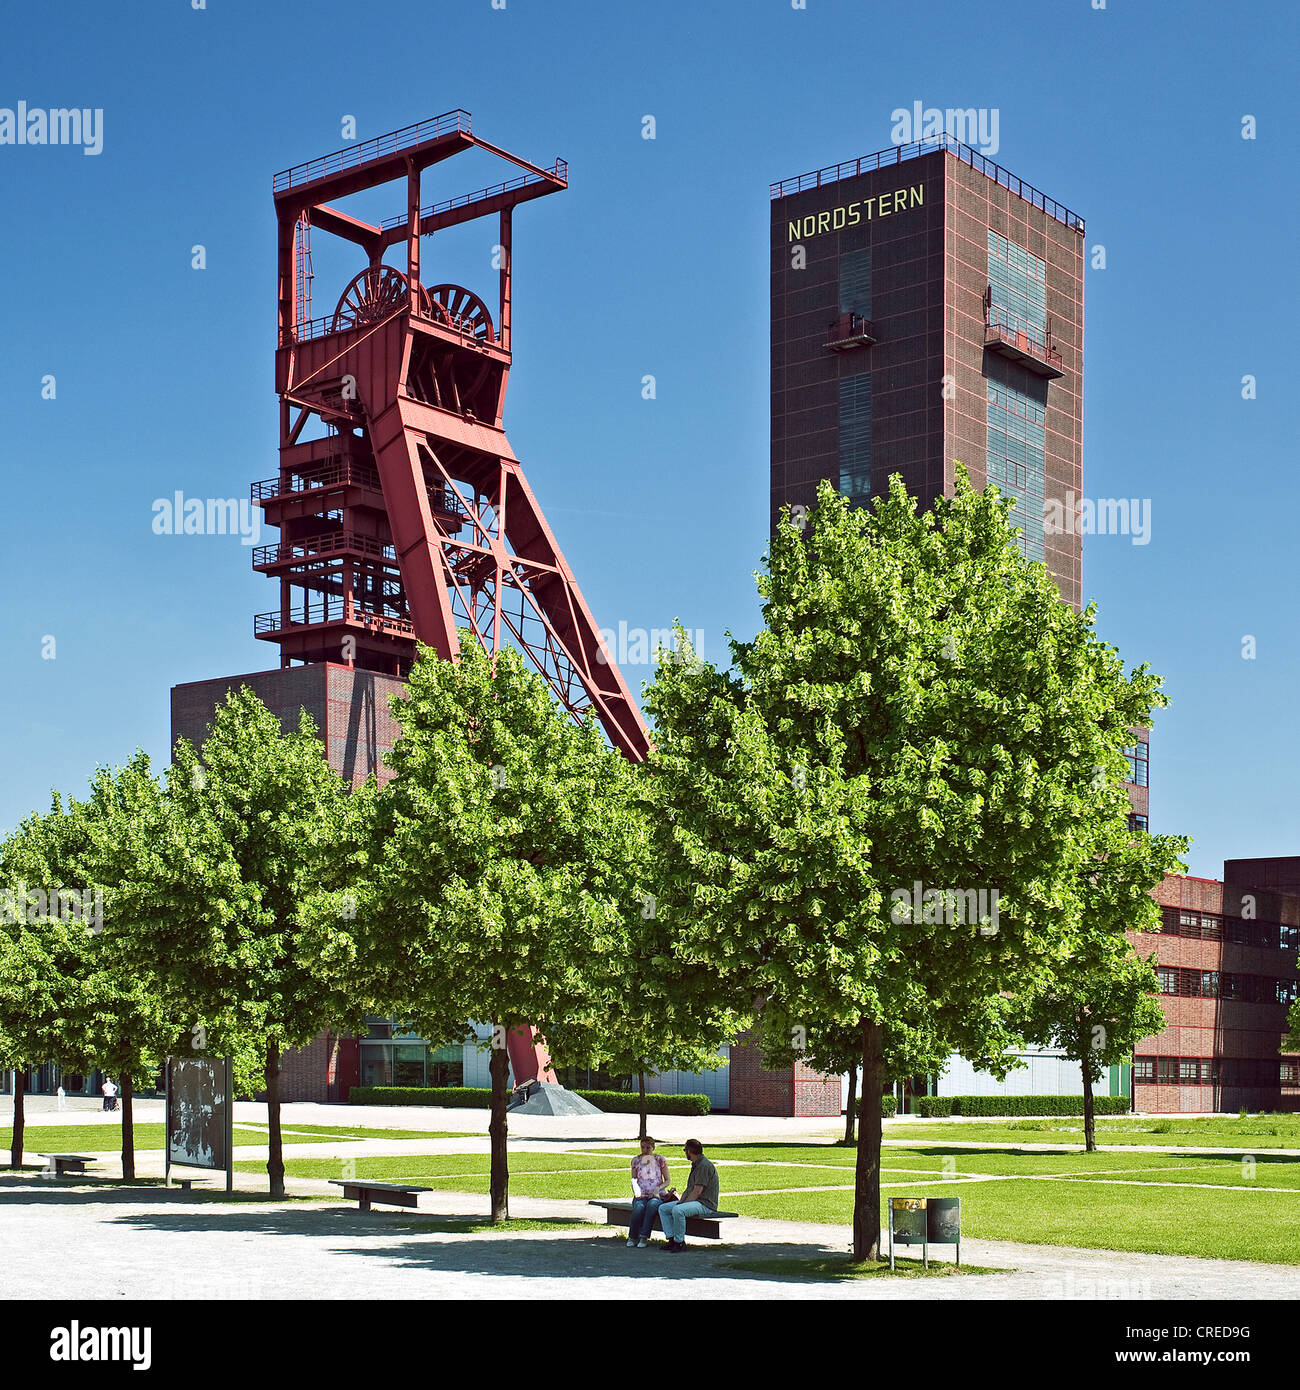 Heritage-protected copricapo dell'ex miniera di carbone Nordstern presso il Parco Nordstern, in Germania, in Renania settentrionale-Vestfalia, la zona della Ruhr, Gelsenkirchen Foto Stock